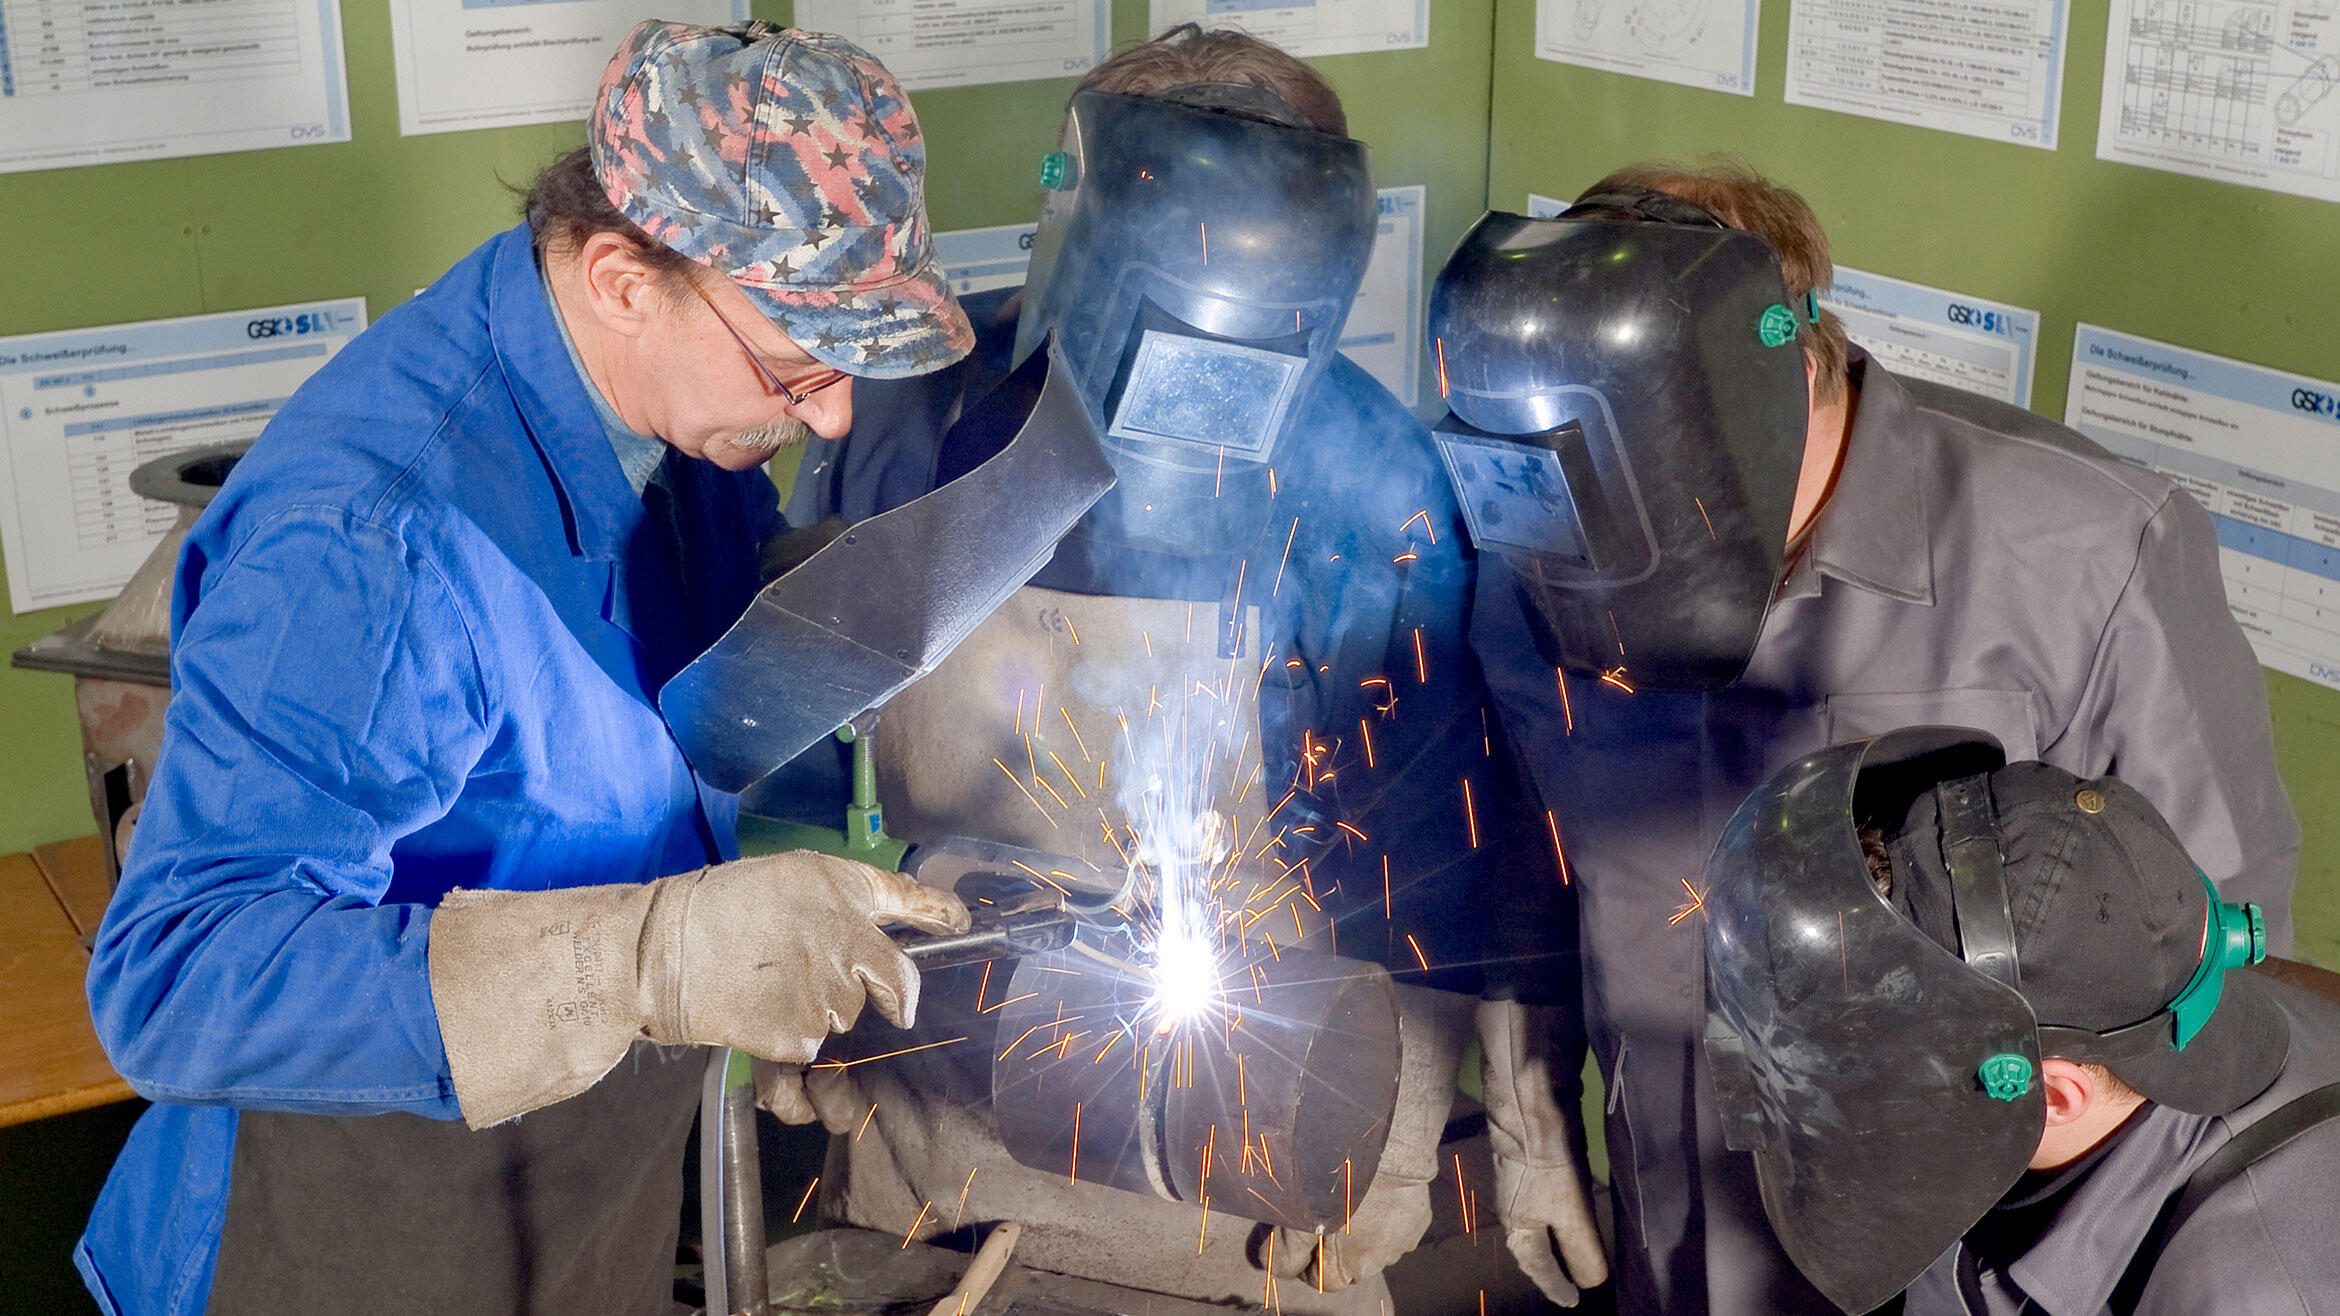 trainees practice welding